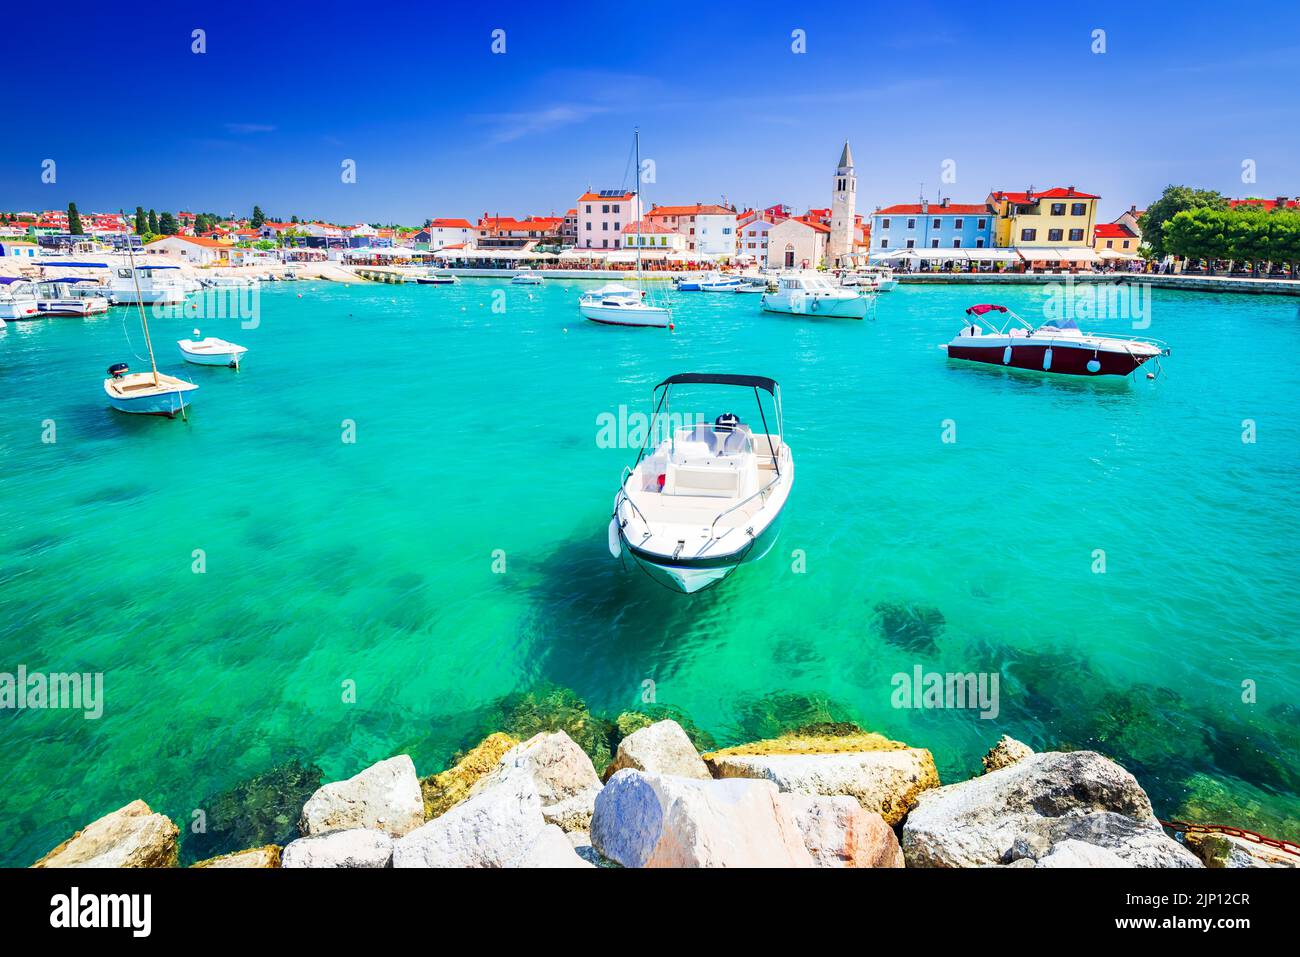 Fazana, Croacia. Puerto deportivo de la pequeña ciudad idílica Fazana, vista frente al mar en la península de Istria del mar Adriático. Foto de stock